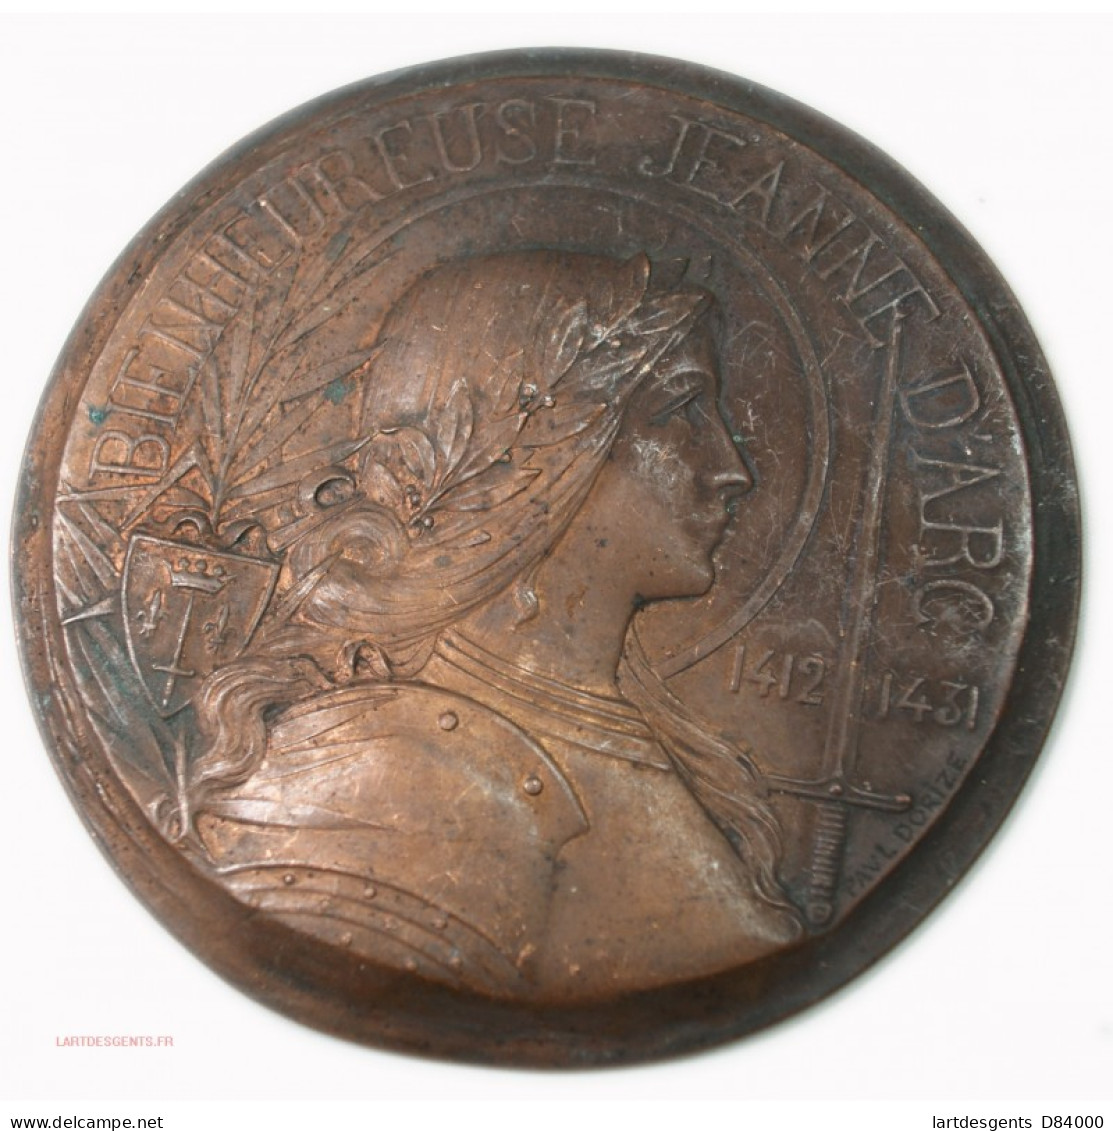 Rare Médaille Uniface Bienheureuse Jeanne D'Arc 1412-1431 Par Paul DORIZE - Adel